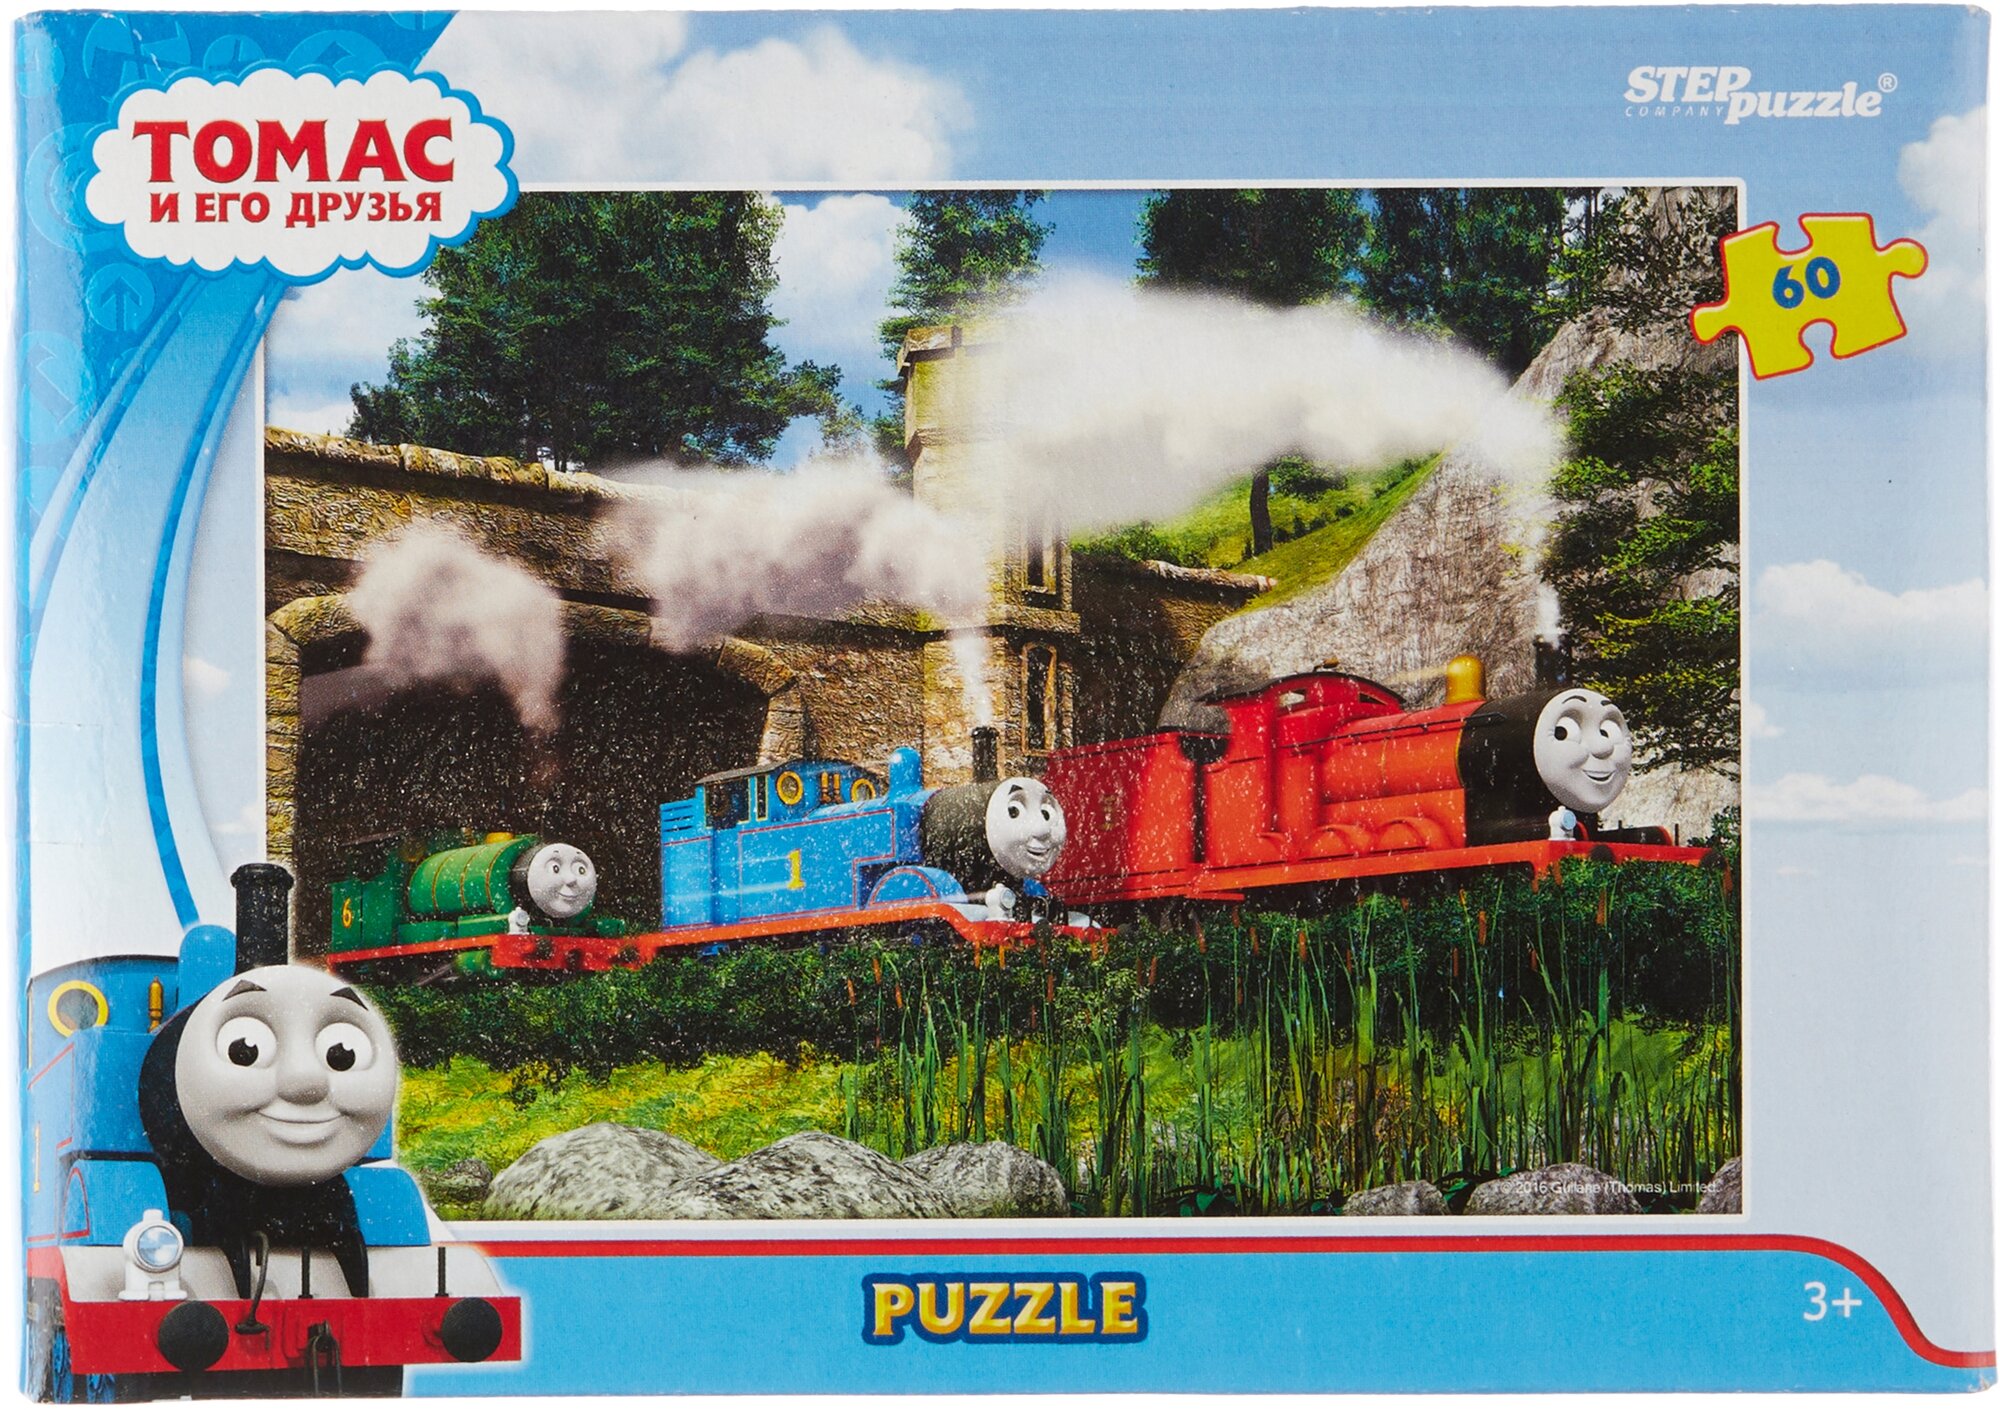 Пазл Step puzzle Томас и его друзья (81150), 60 дет., разноцветный